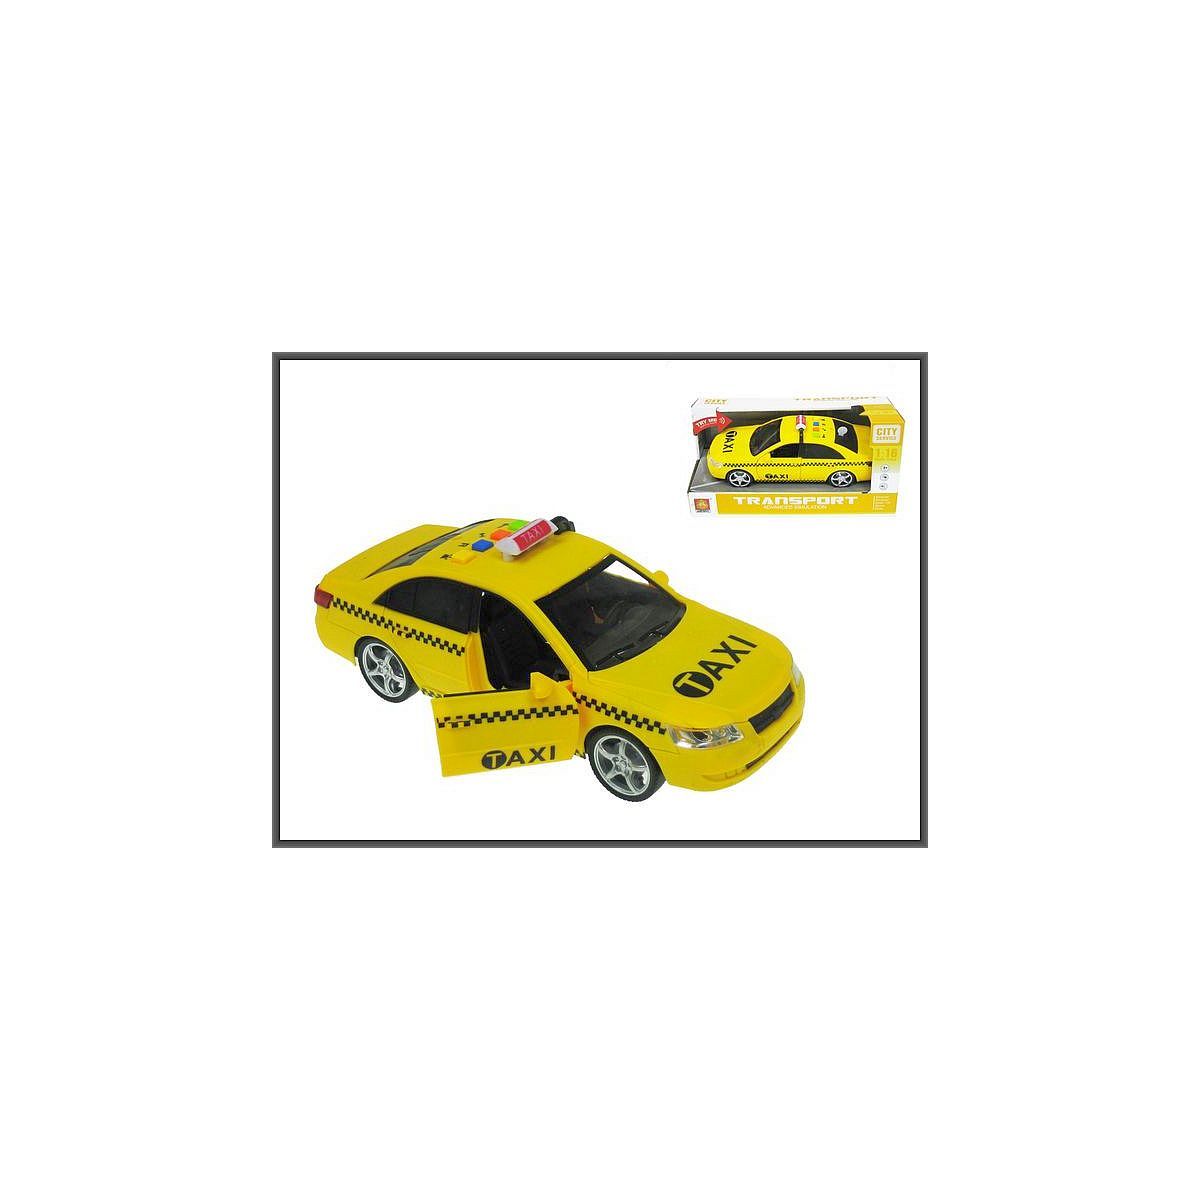 Samochód Taxi ze światłem i dźwiękiem w skali 1:16 (24cm) Hipo (H12329)